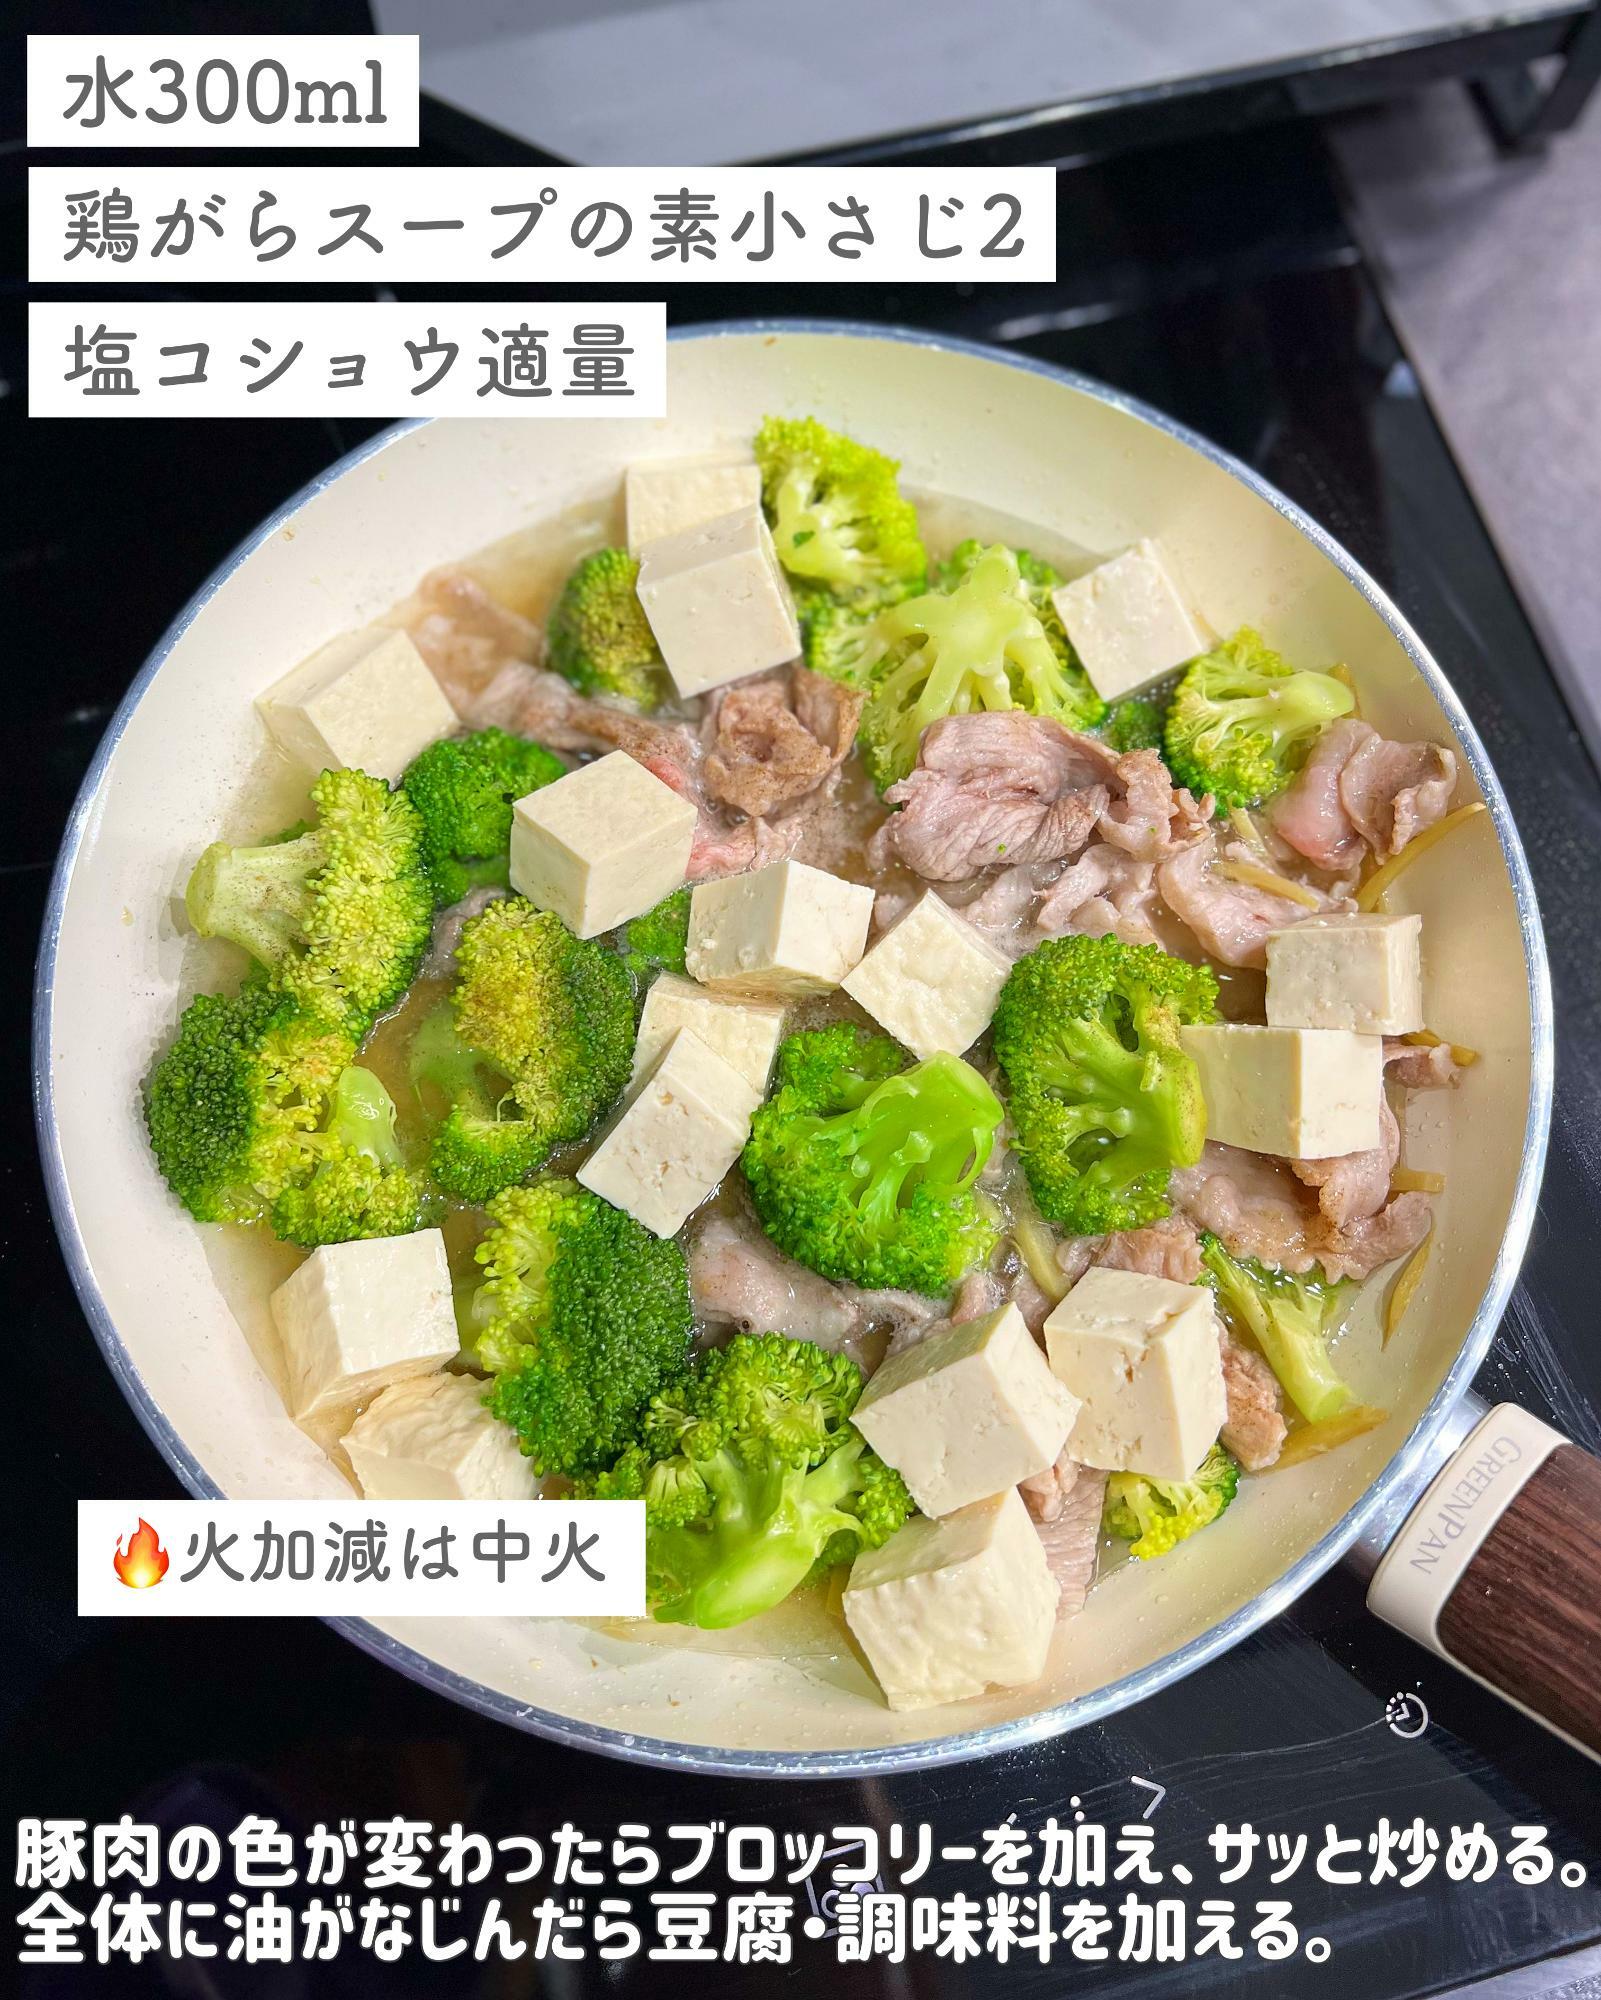 豚肉の色が変わったらブロッコリーを加え、サッと炒める。全体に油がなじんだら豆腐・A を加える。